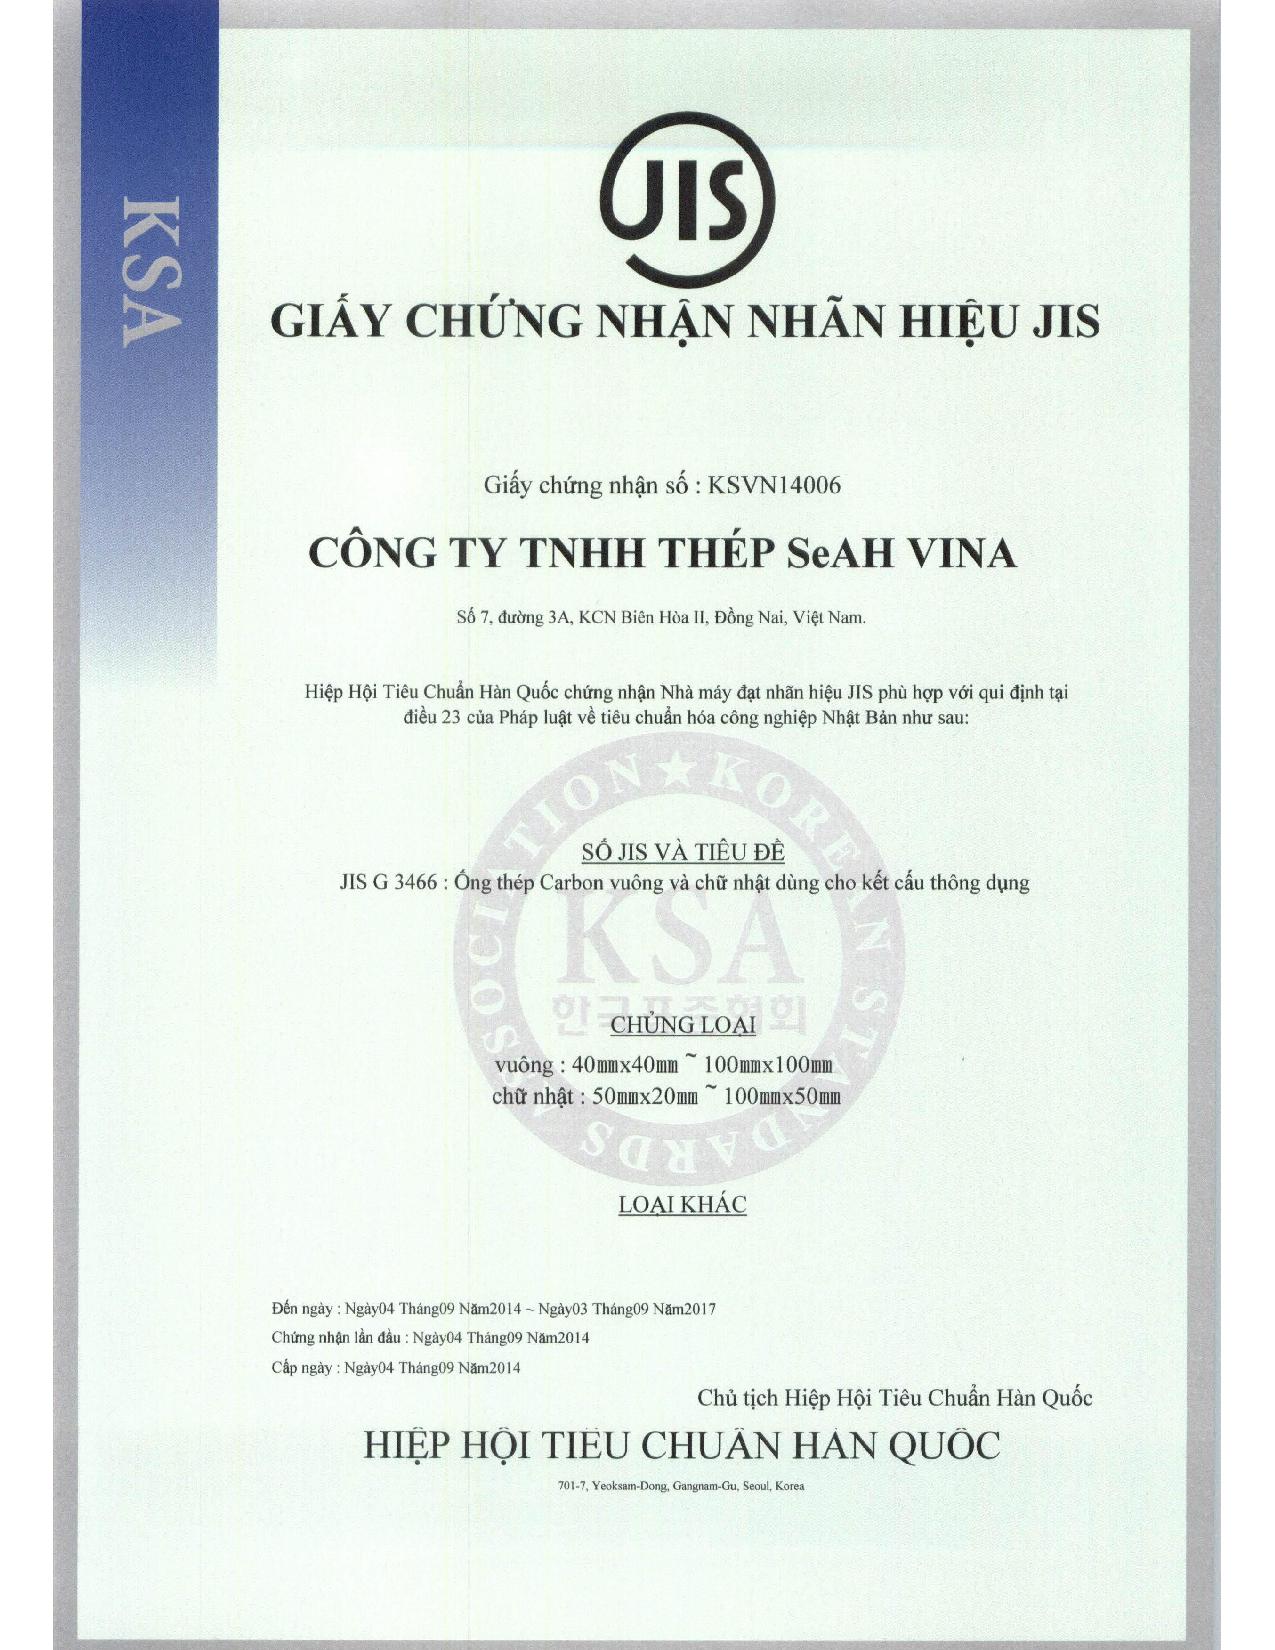 JIS Mark Certificate - Thép SeAH - Công Ty TNHH Thép SeAH Việt Nam